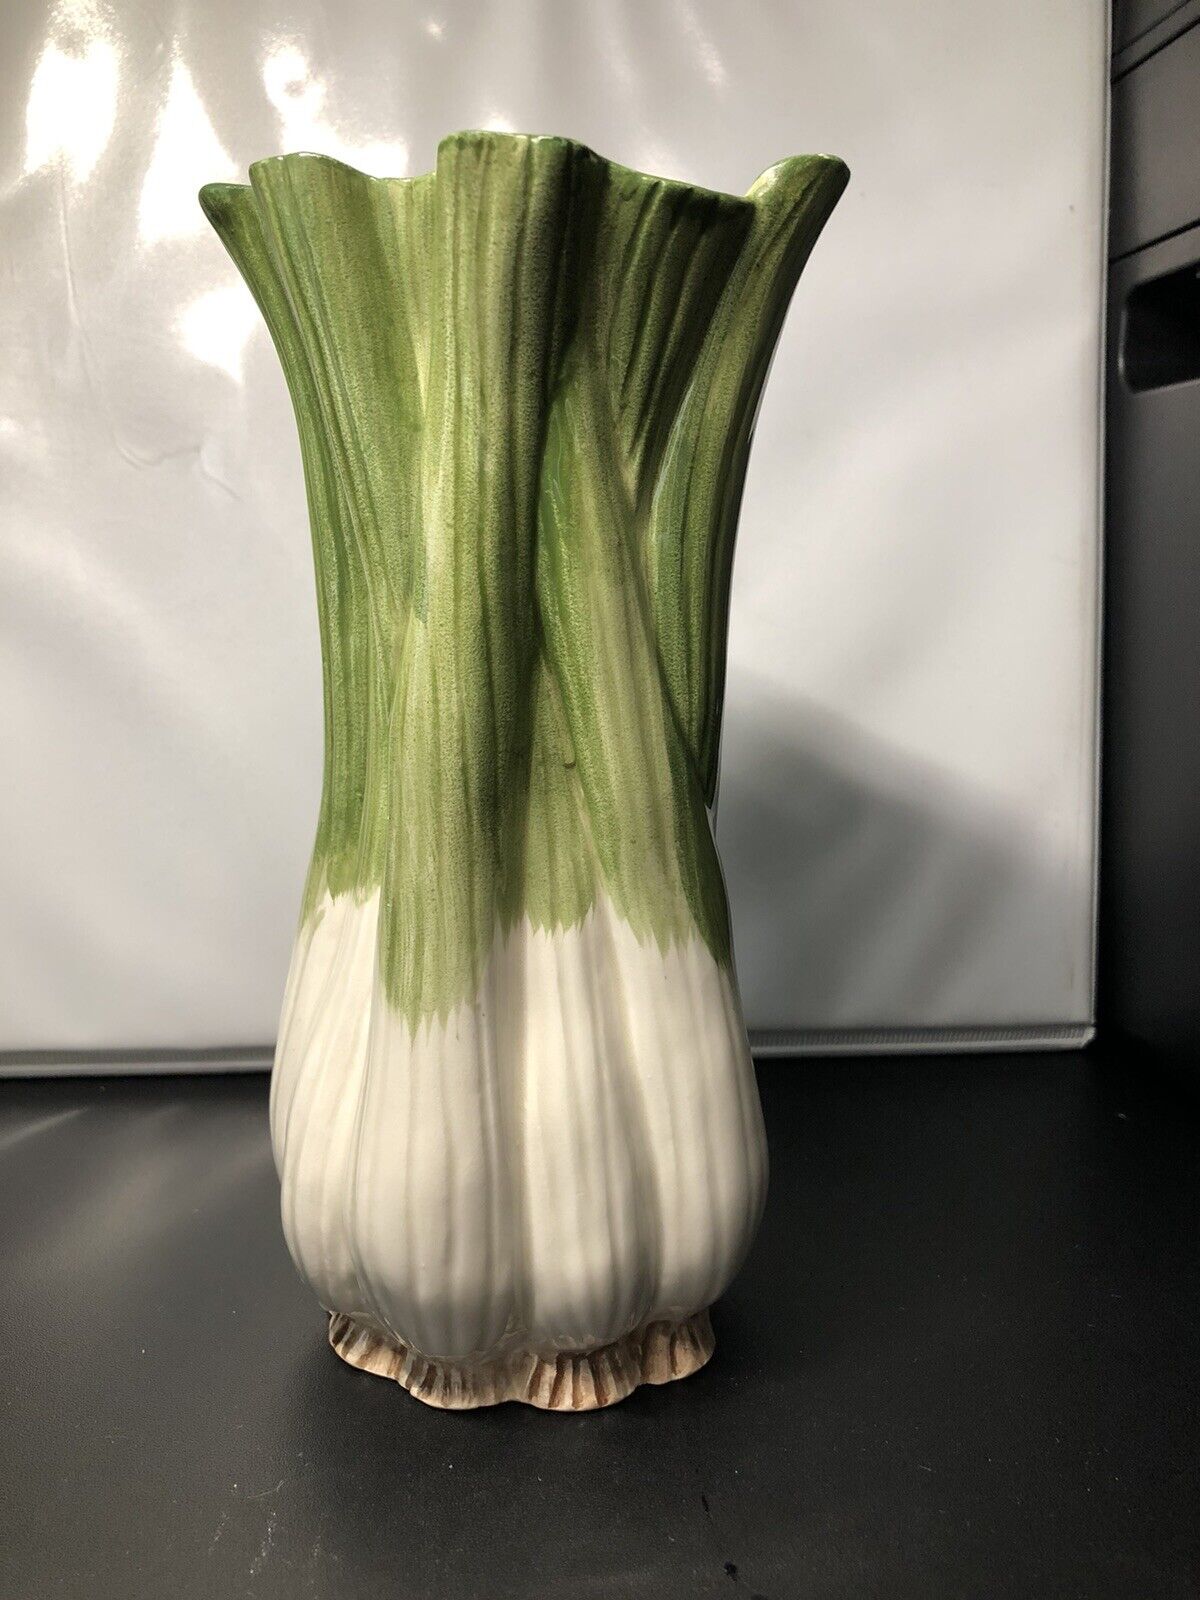 Fritz And Floyd 7” Celery vase.  1988